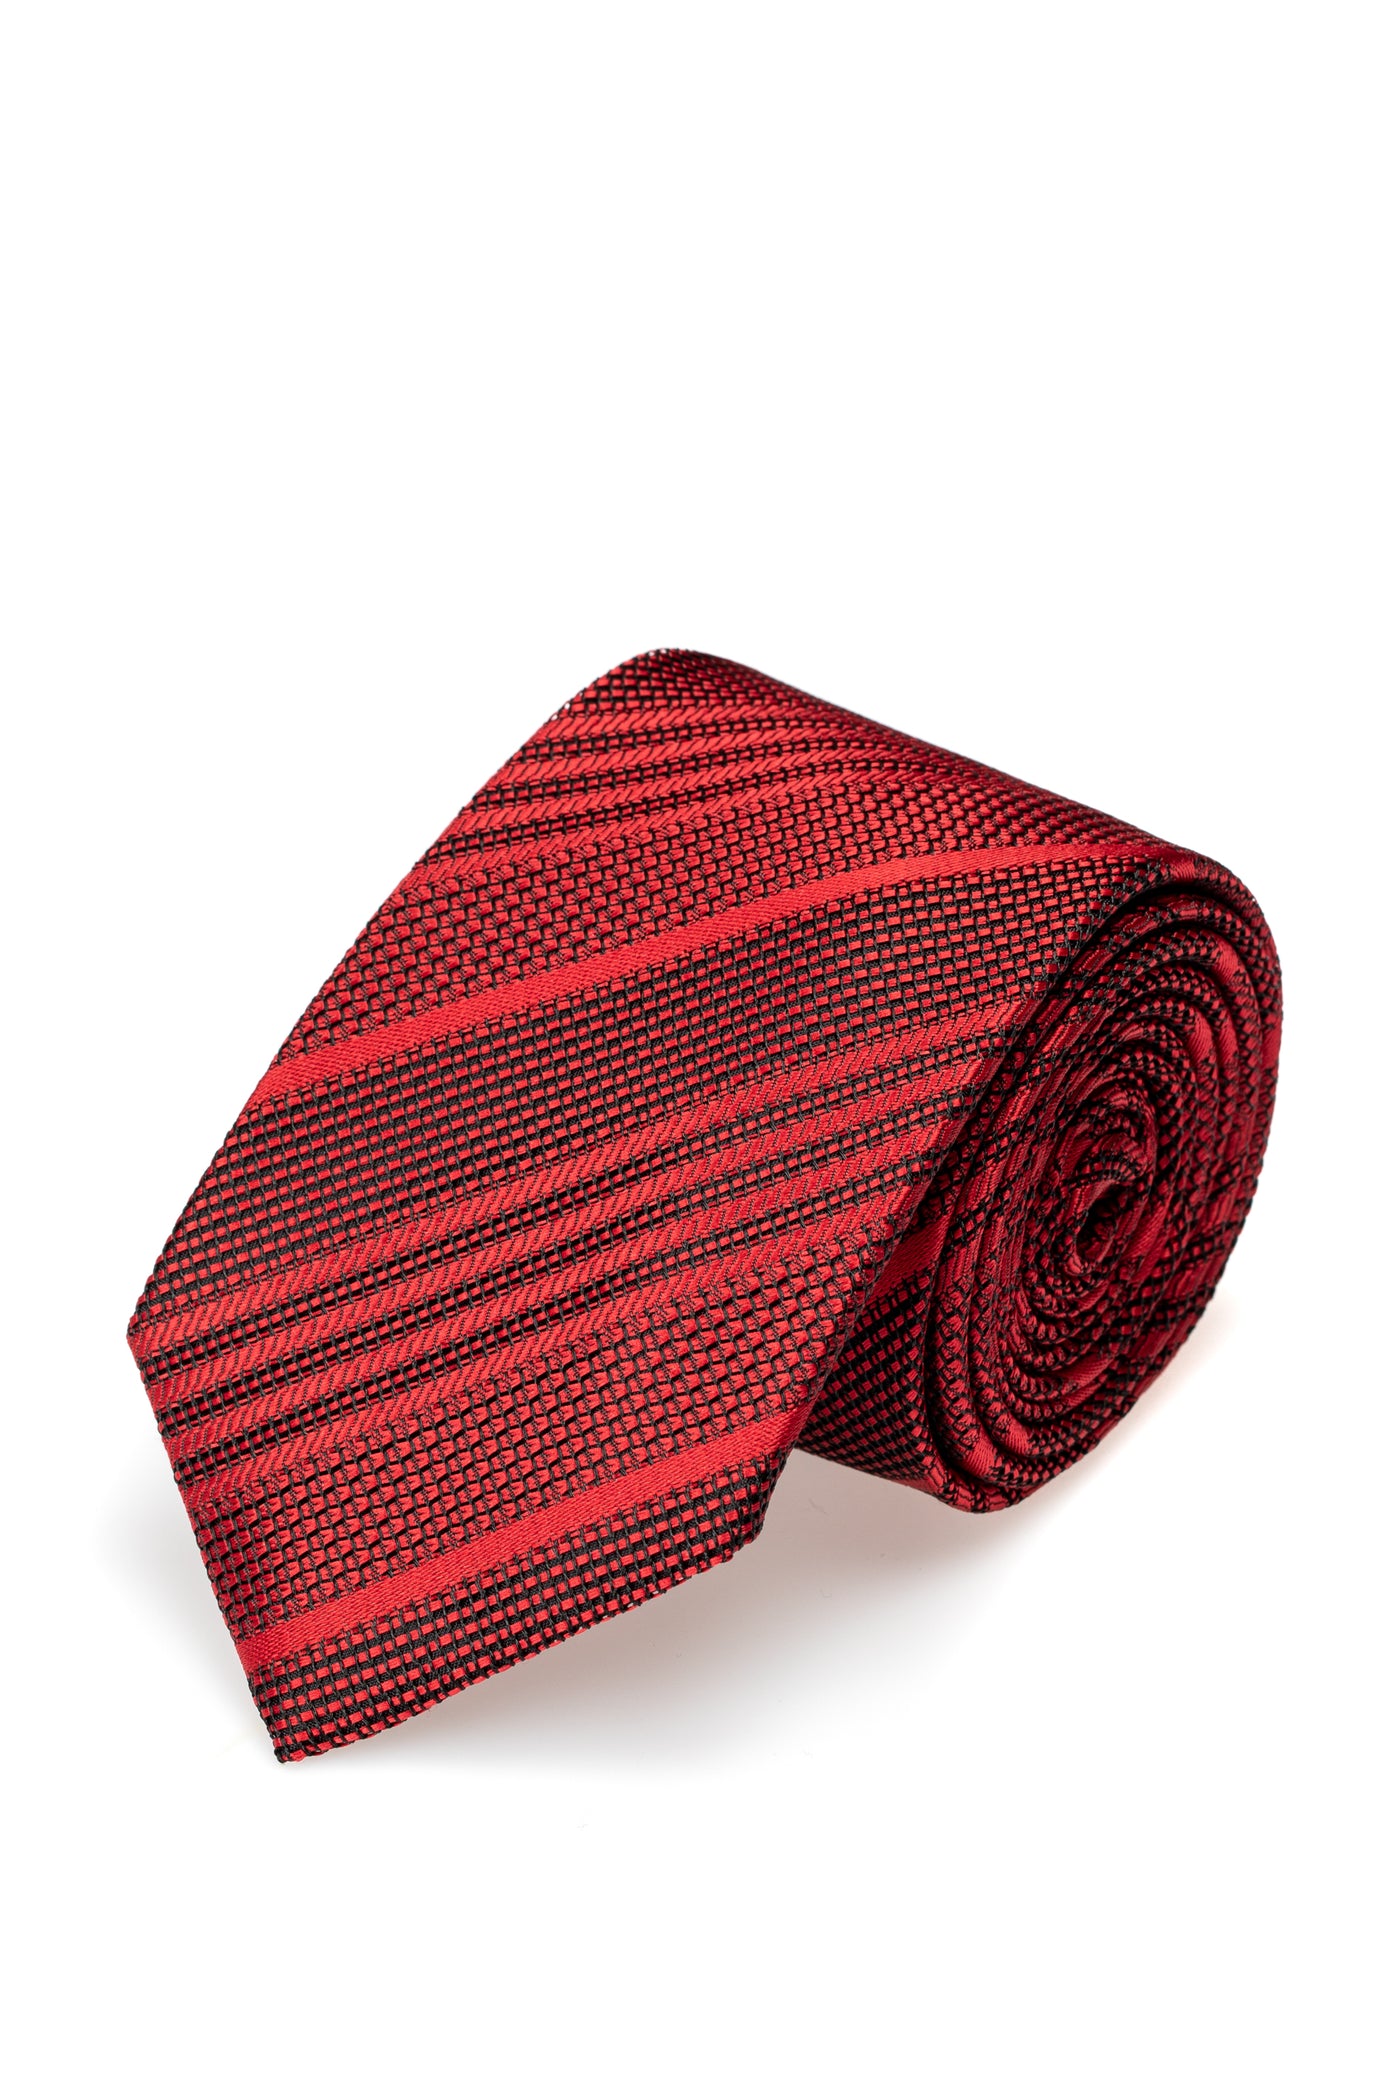 テクスチャとストライプの赤いシルクのネクタイ